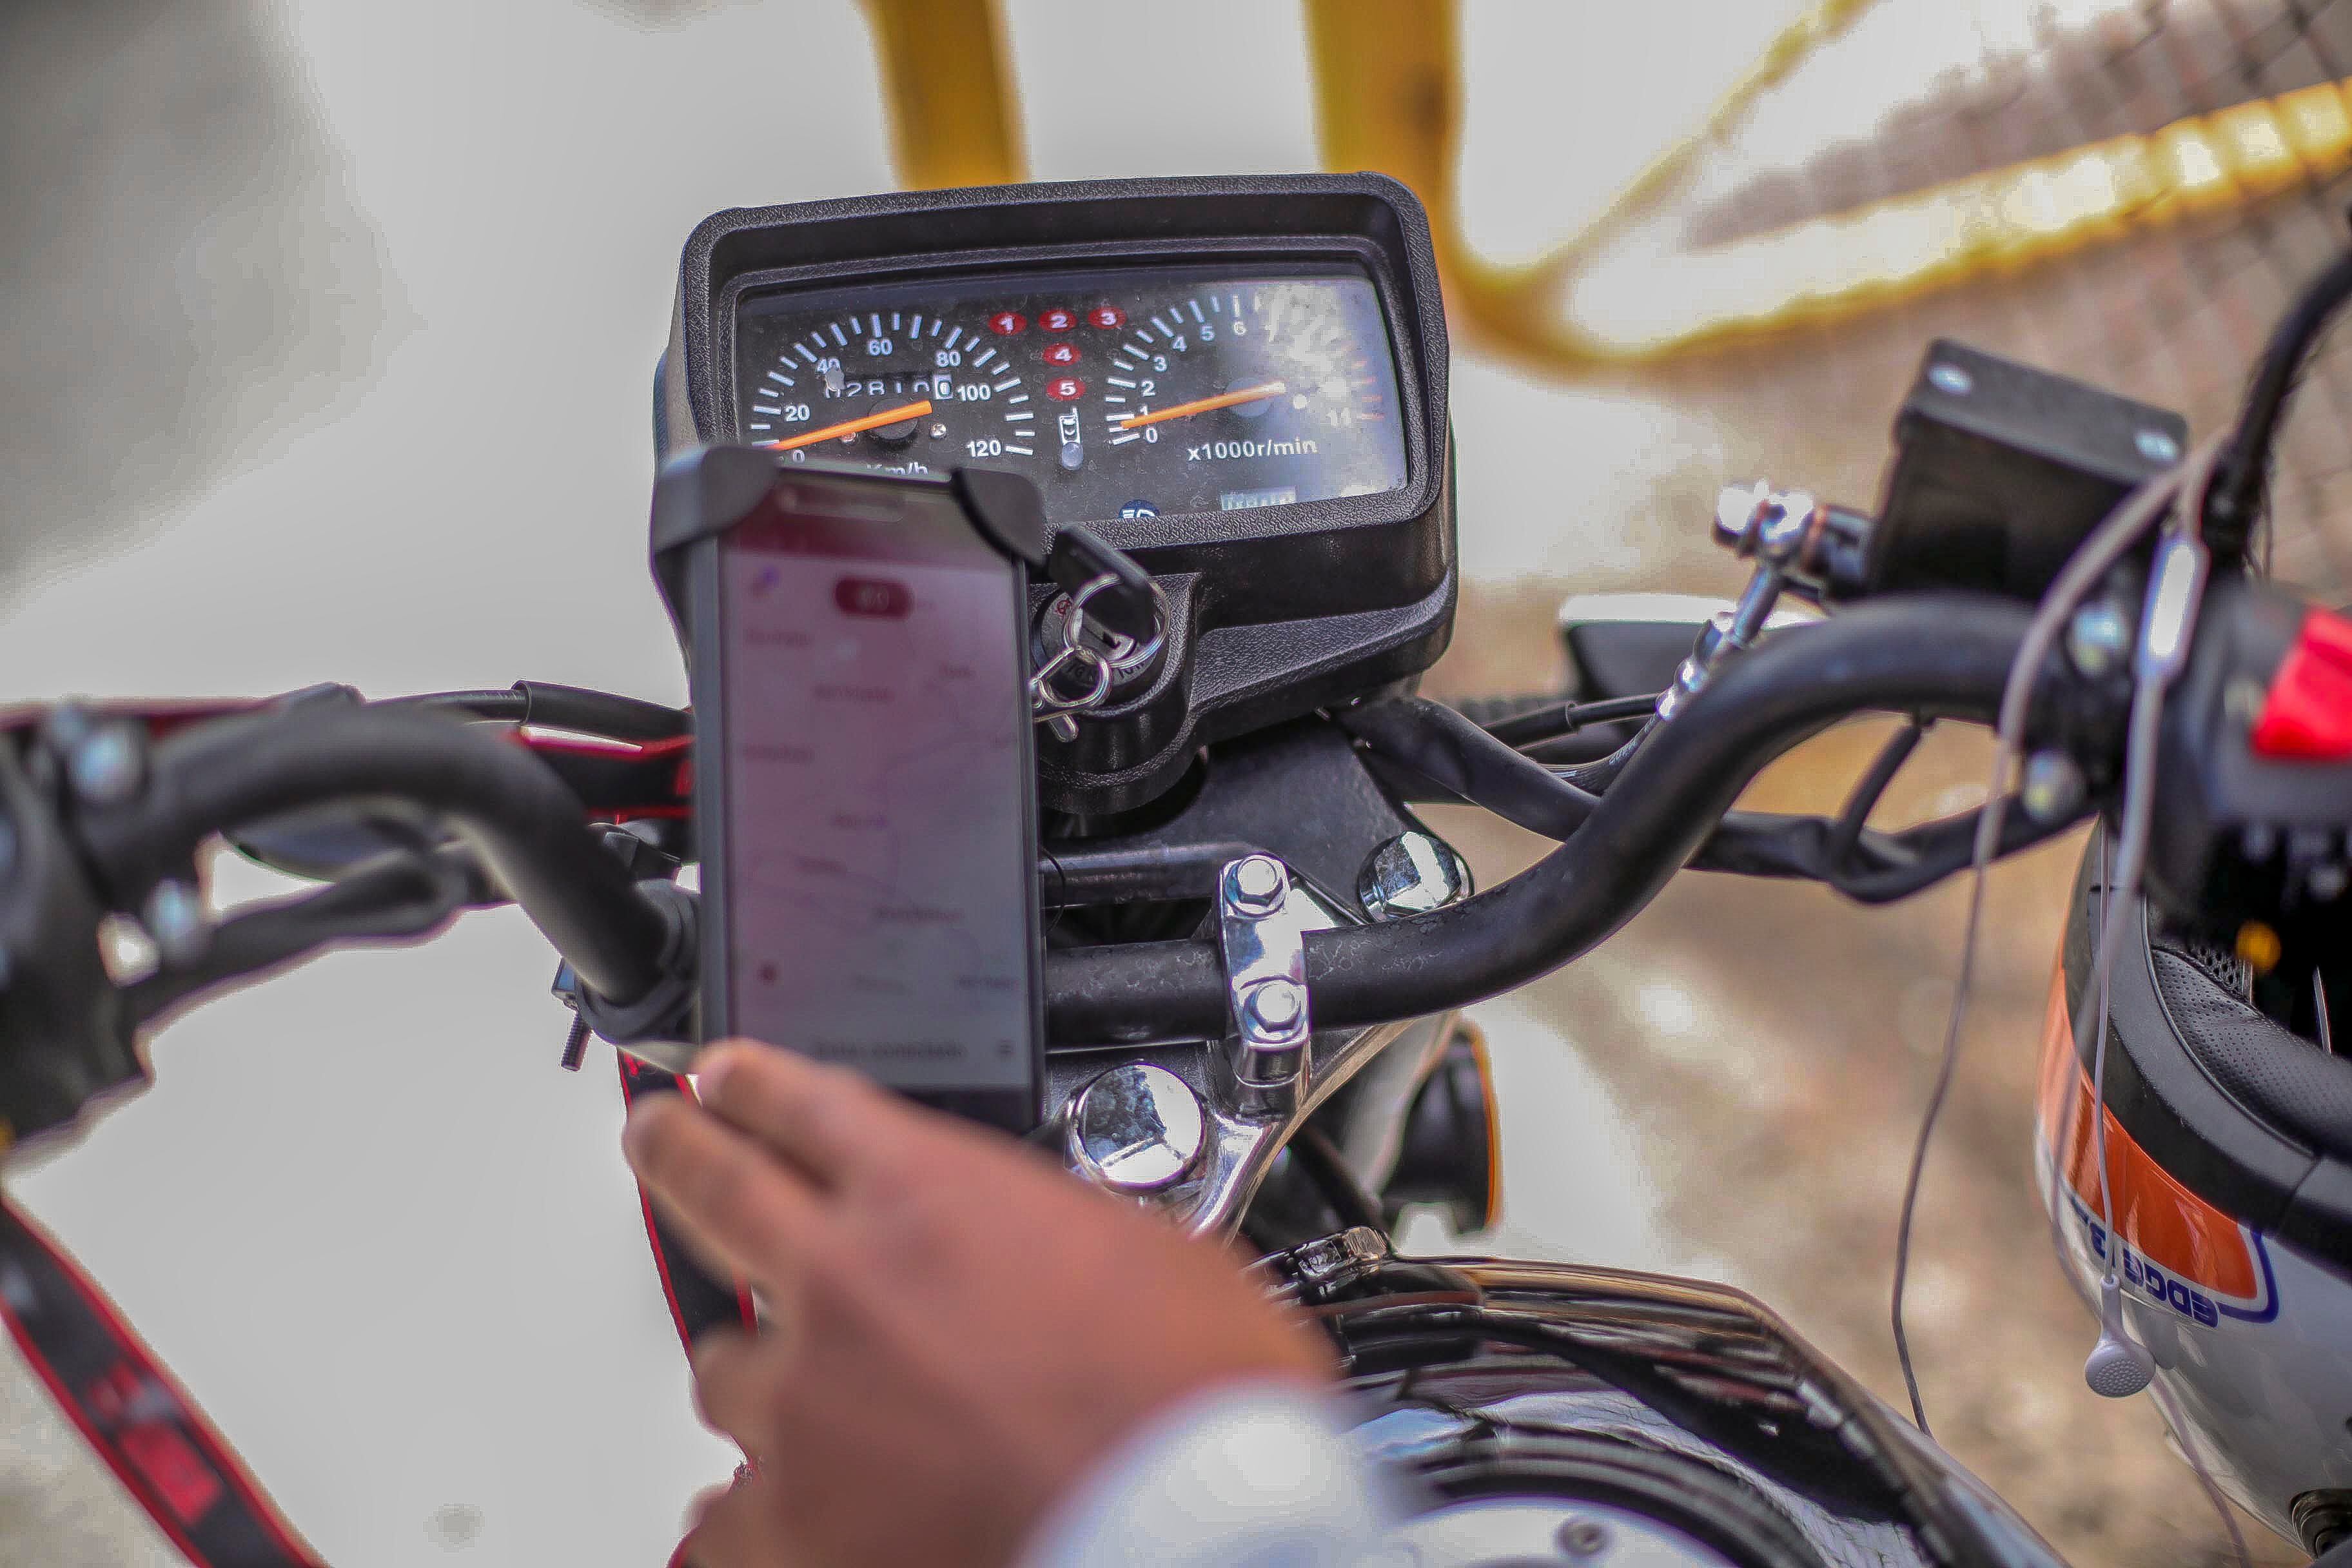 El lanzamiento de un plan piloto de Uber Moto en Cartago fue recibido con justa preocupación en el Consejo de Seguridad Vial (Cosevi). Foto para fines ilustrativos.